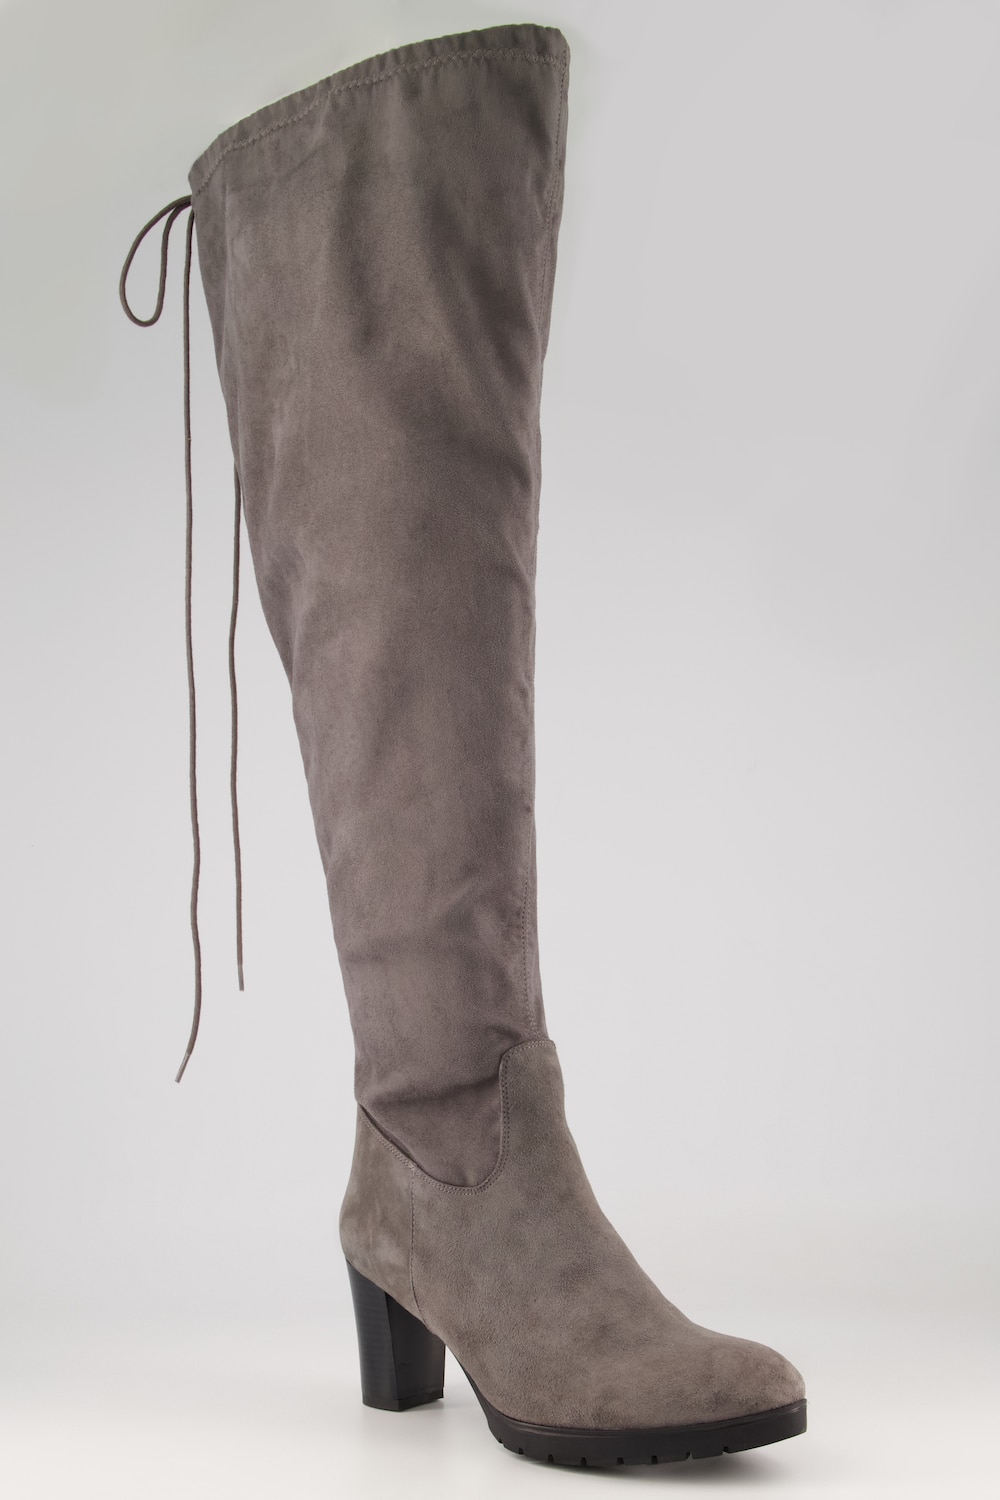 Overknee-Stiefel, Damen, grau, Größe: 42, Leder/Synthetische Fasern, Ulla Popken von Ulla Popken